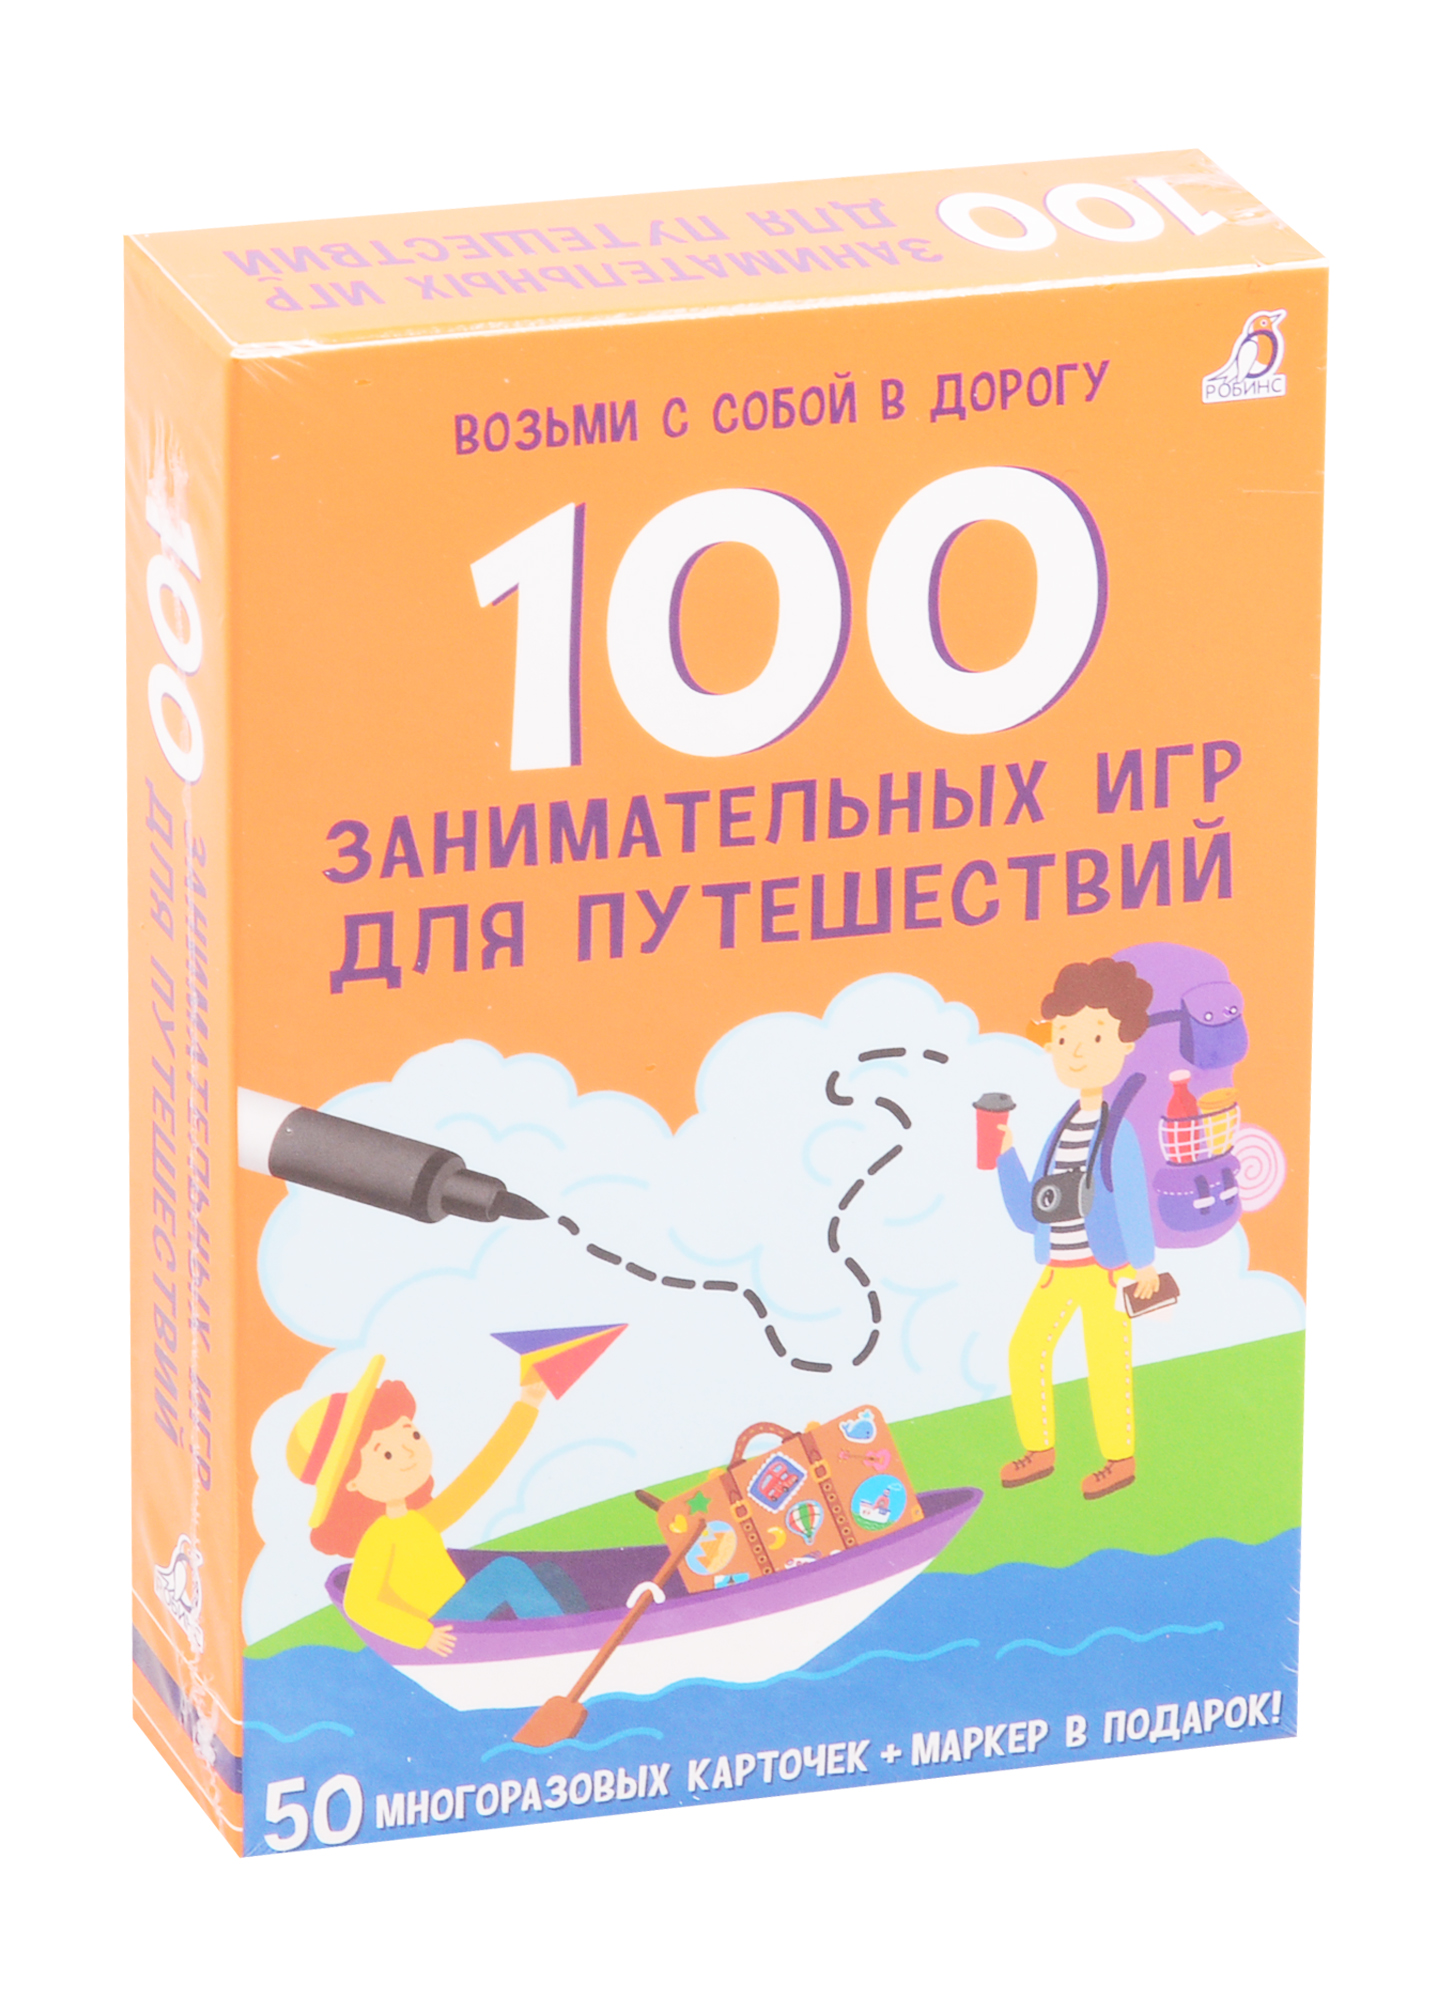 Асборн - карточки. 100 занимательных игр для путешествий карточки 100 логических игр для путешествий робинс детям